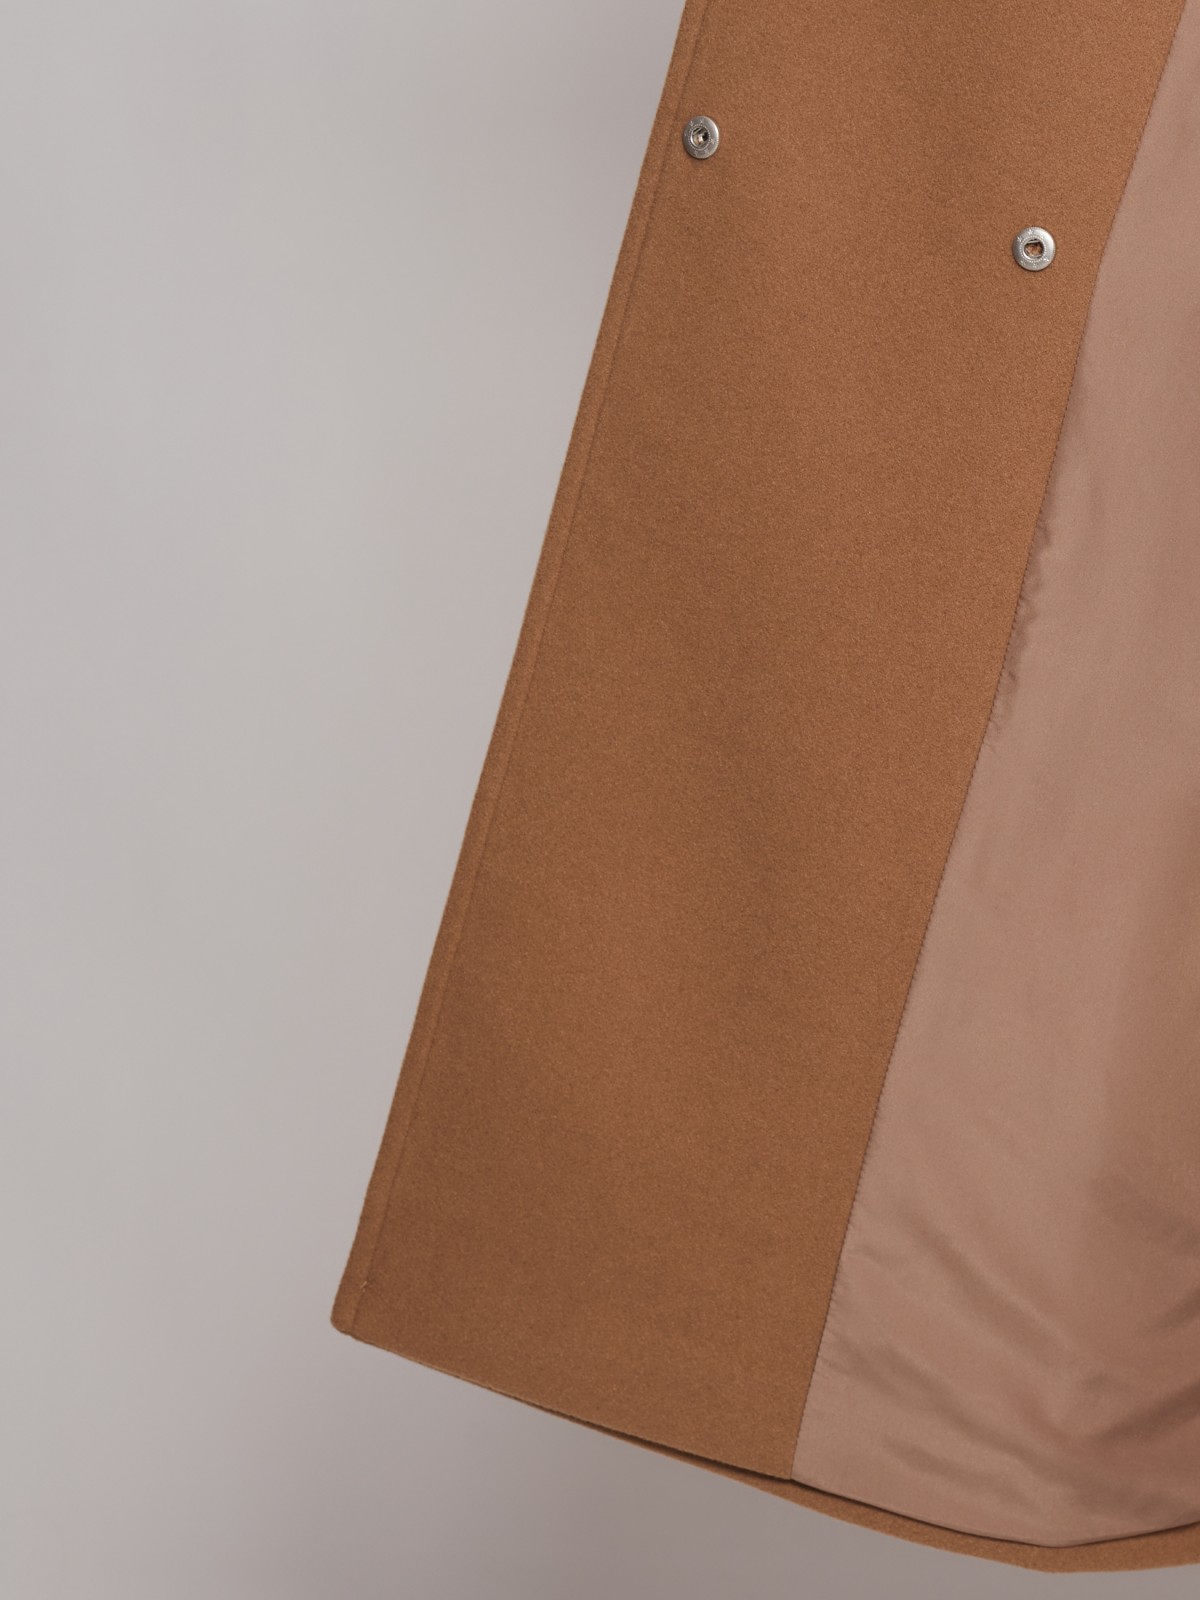 Пальто-халат с поясом zolla 023125857014, цвет бежевый, размер S - фото 3